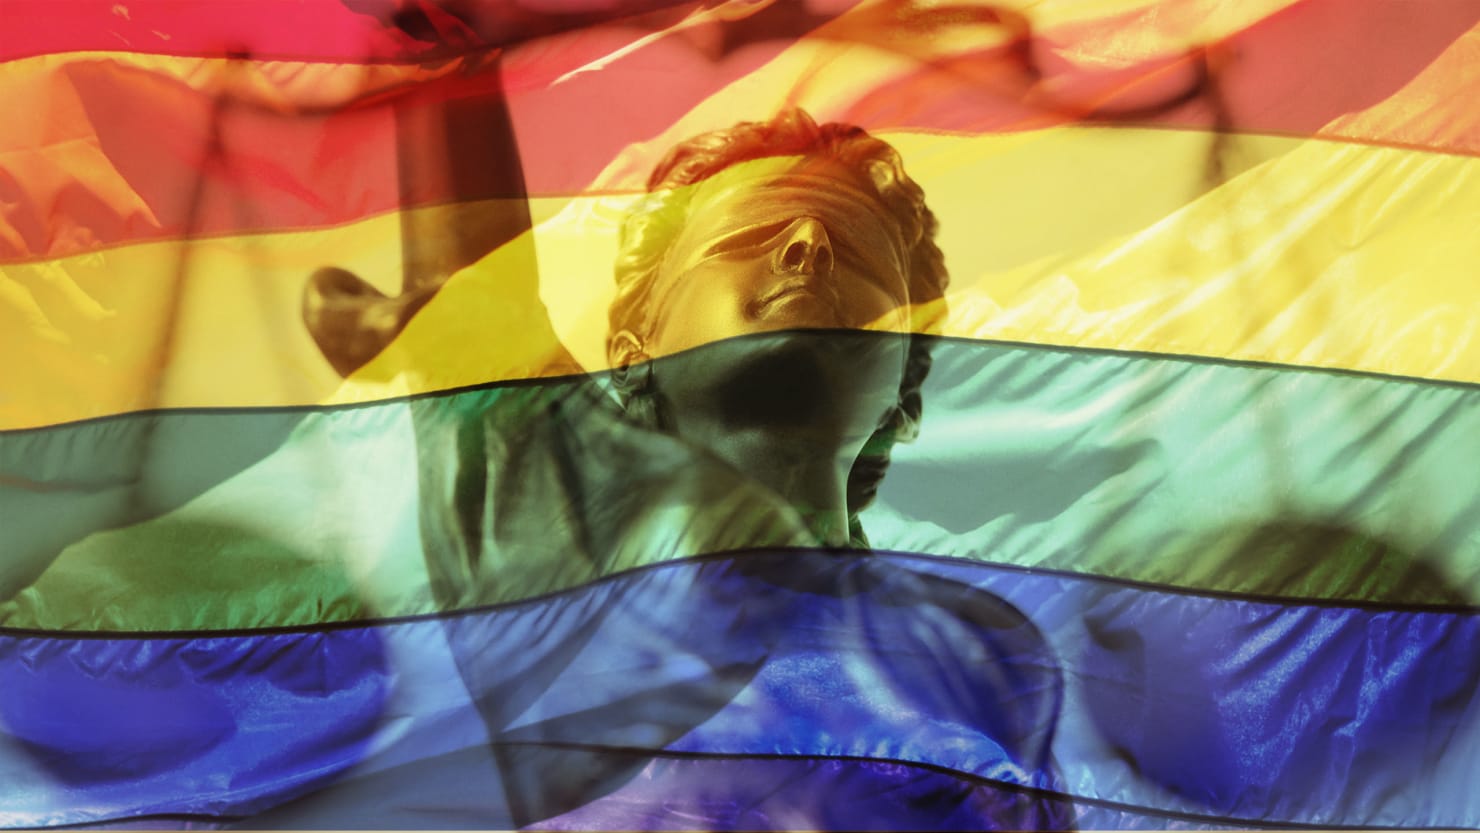 Image result for LGBT